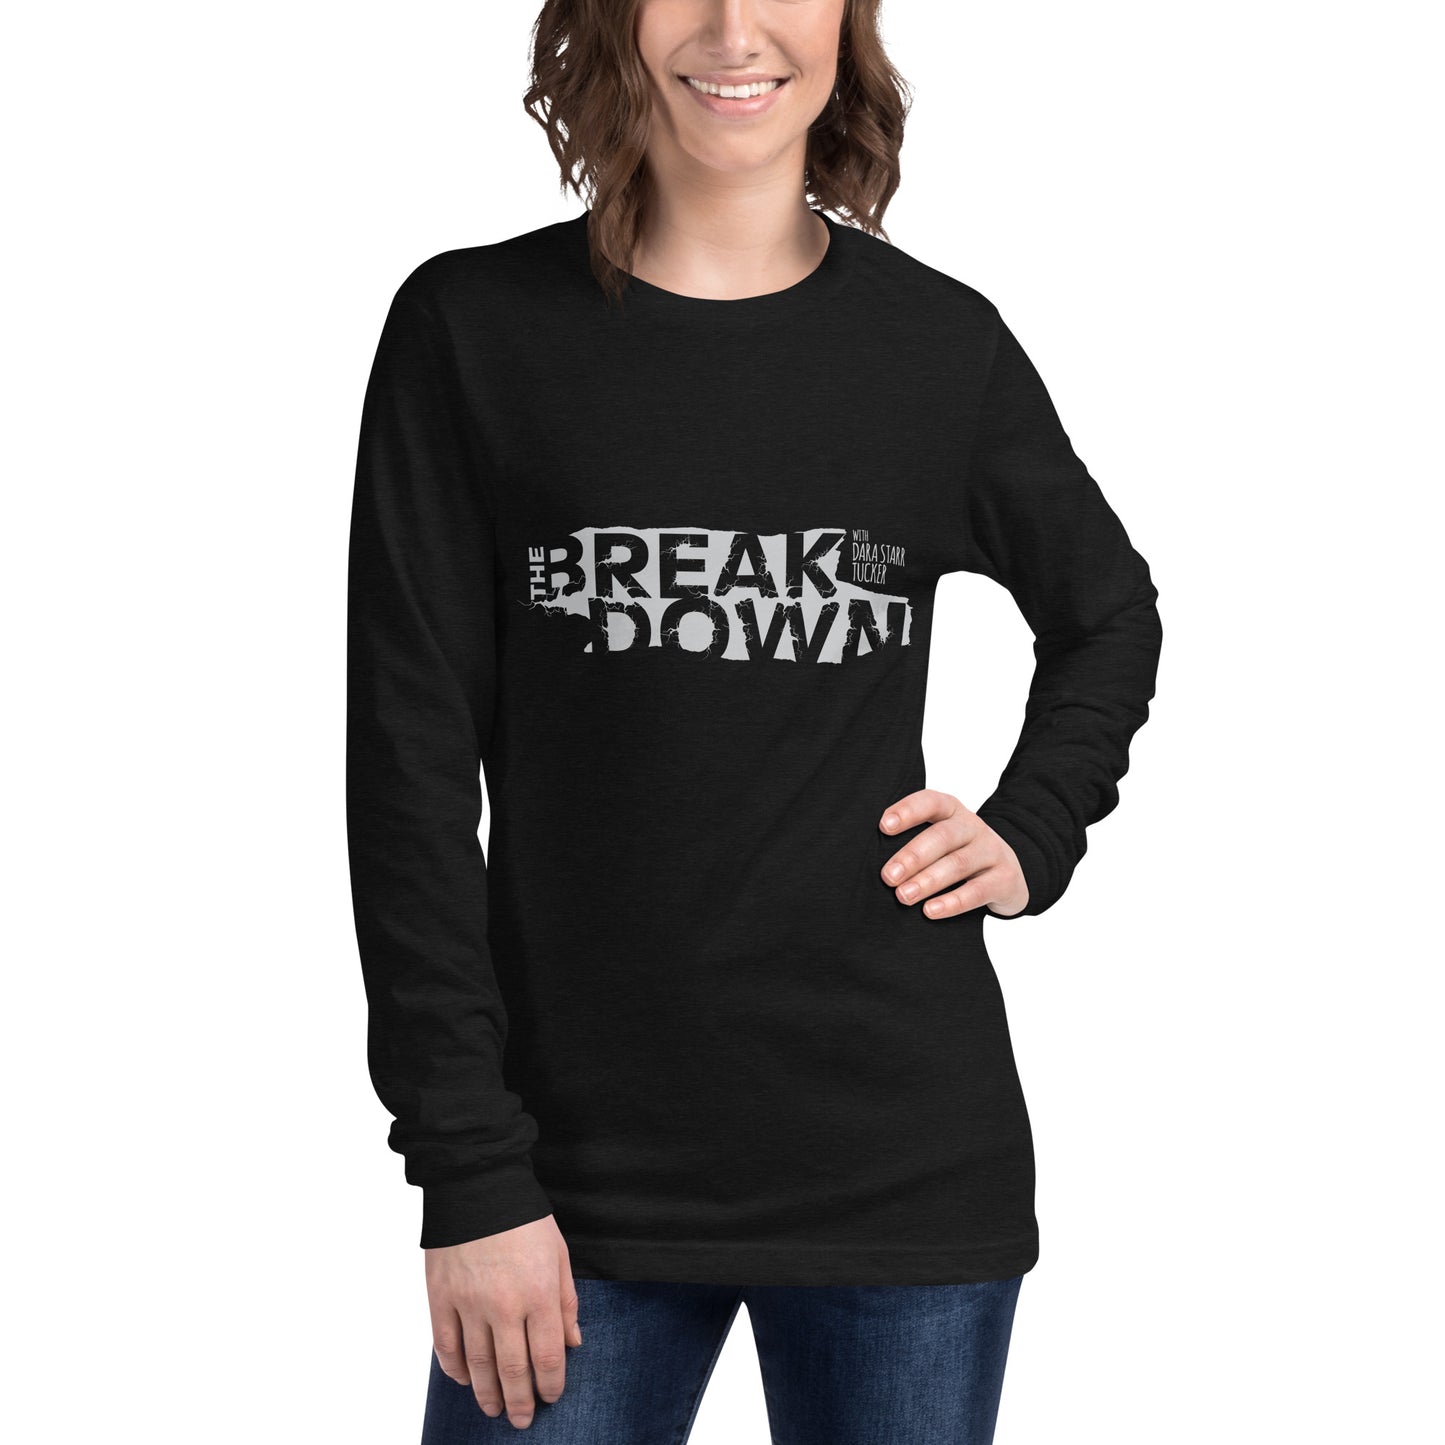 'The Breakdown' Men's Shirt - Black Unisex Long Sleeve Tee